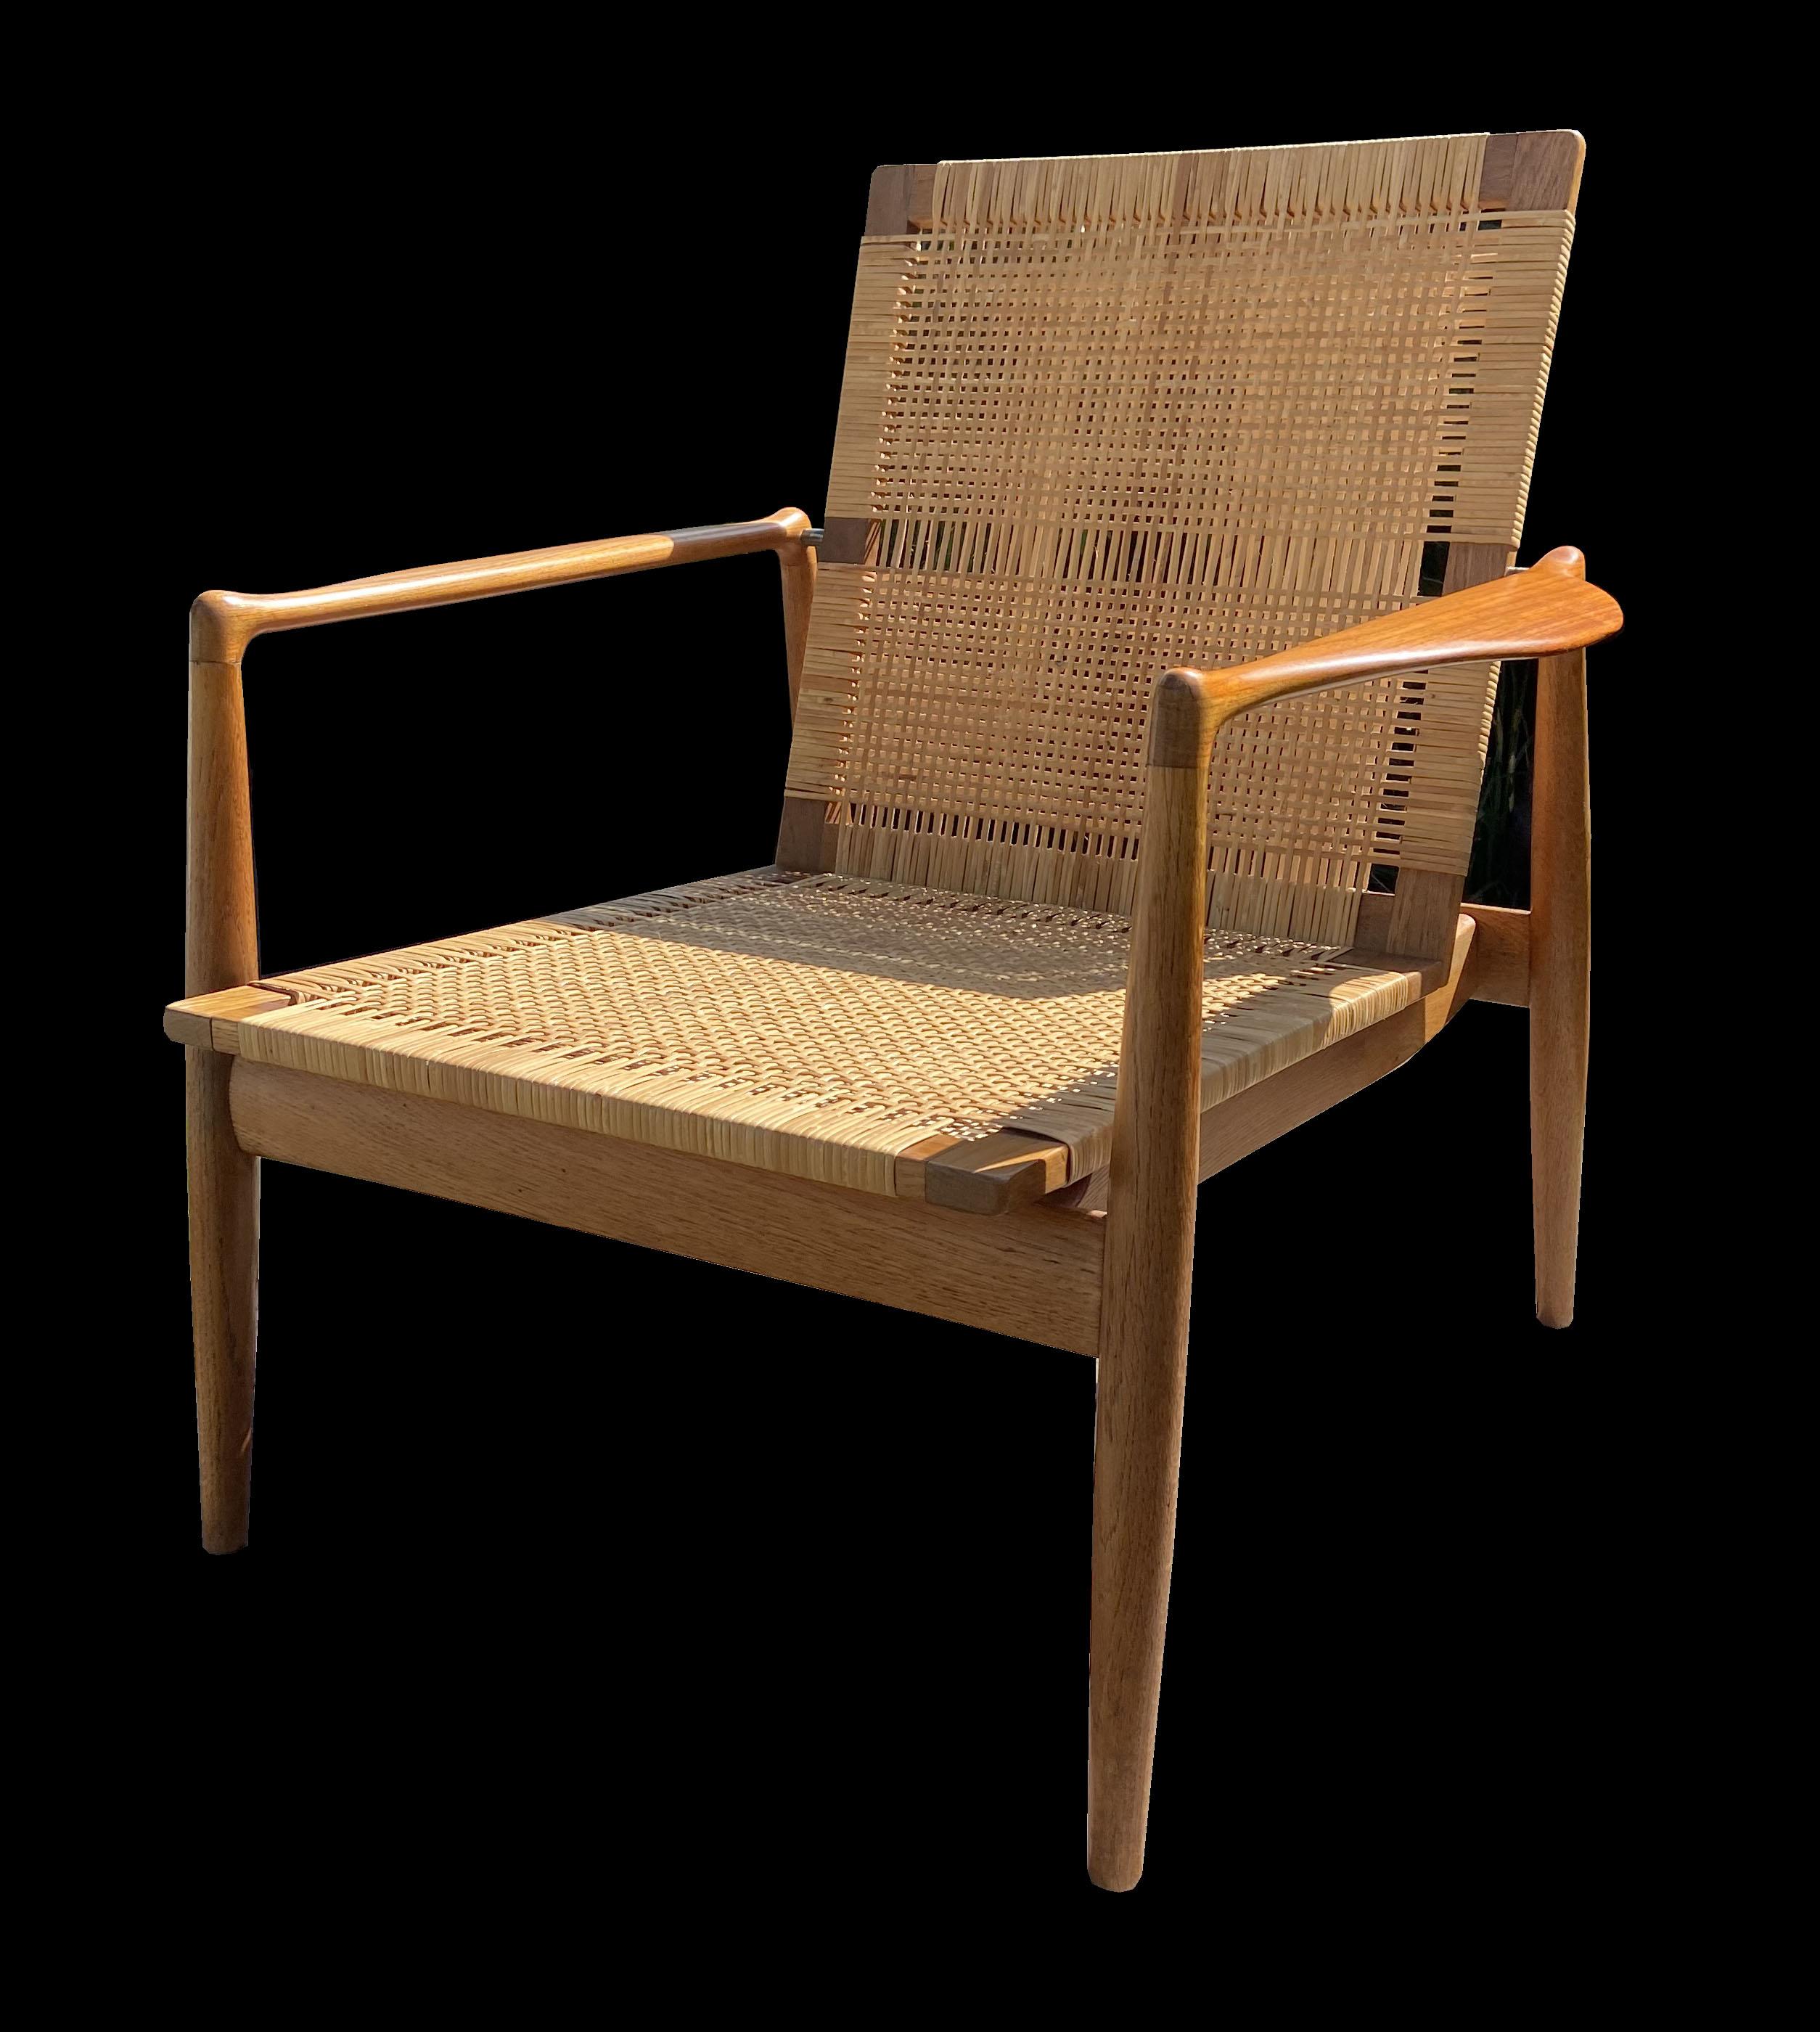 Dies ist ein wirklich schönes Original dieses seltenen Loungesessels, der von Finn Juhl entworfen und von Soren Willadsen hergestellt wurde. Das Gestell des Stuhls ist aus Eiche, die Armlehnen sind aus Teak und die Sitzfläche und Rückenlehne aus